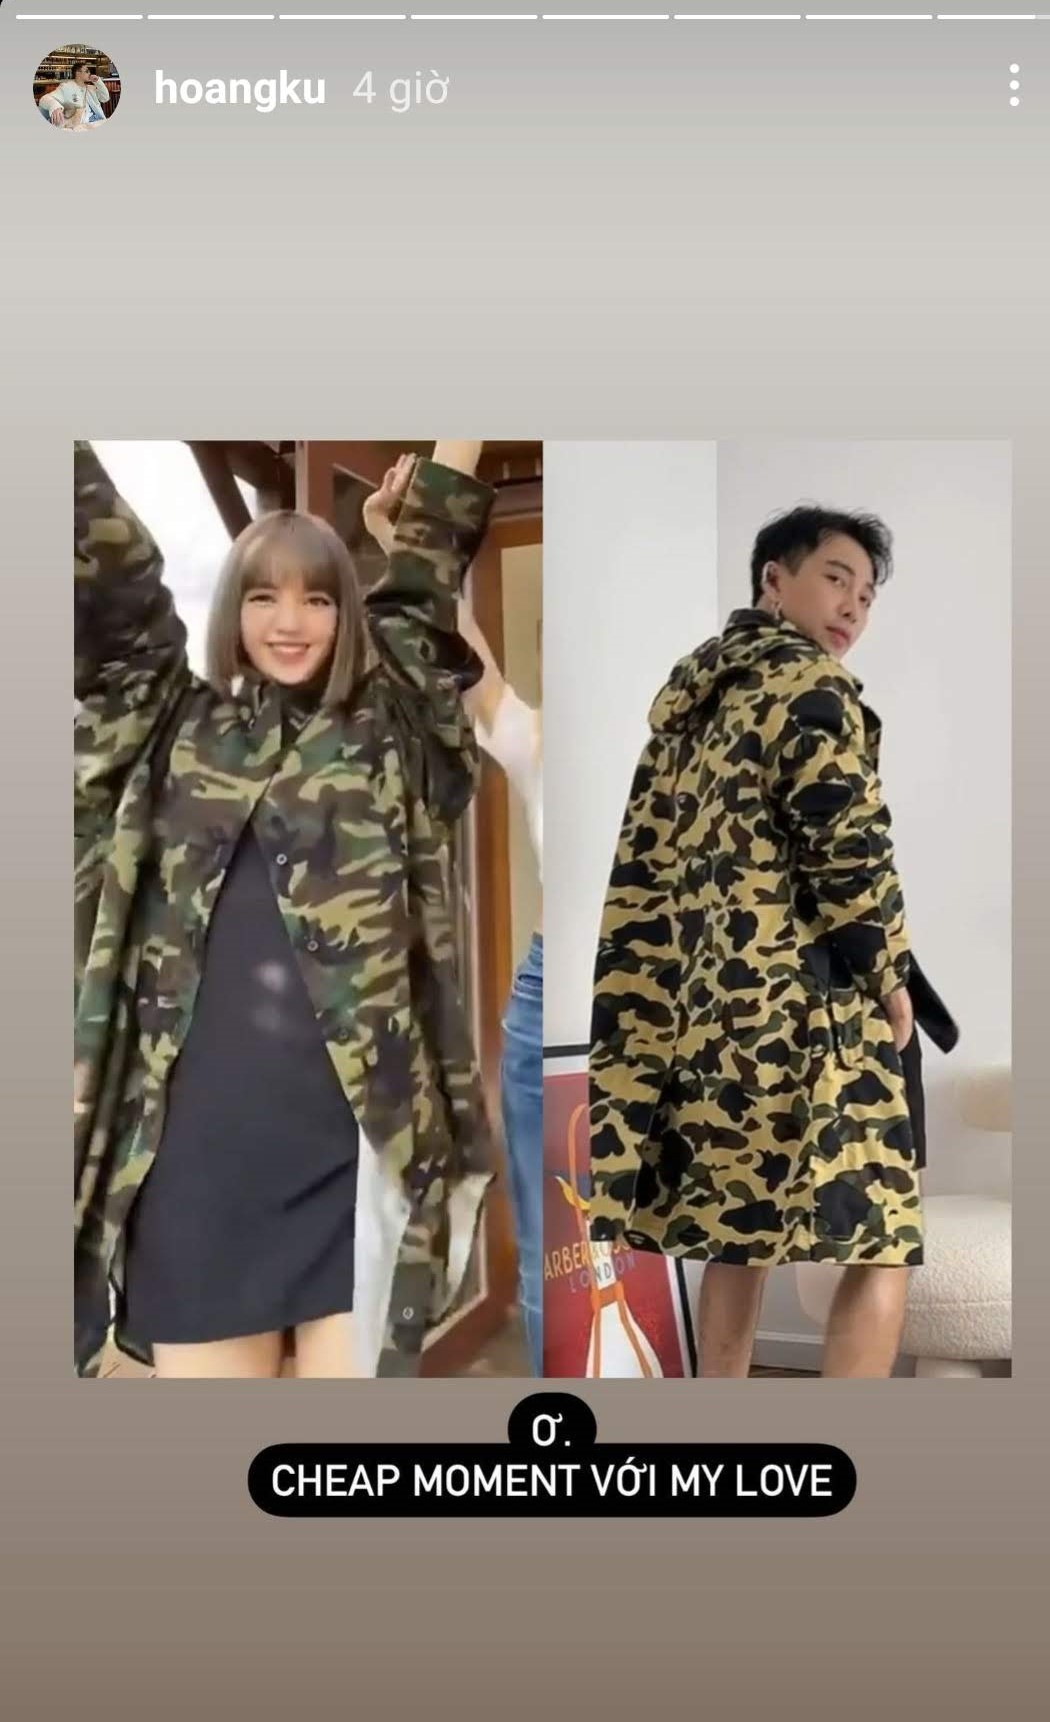 Là một fan 'cứng' của BLACKPINK, stylist Hoàng Ku thể hiện trình độ 'đu trend' cùng idol cực thần tốc. Cũng như các fan Việt khác, chắc hẳn Hoàng Ku cũng cảm thấy vô cùng vui mừng khi có được cheap moment với Lisa đơn giản đến vậy.